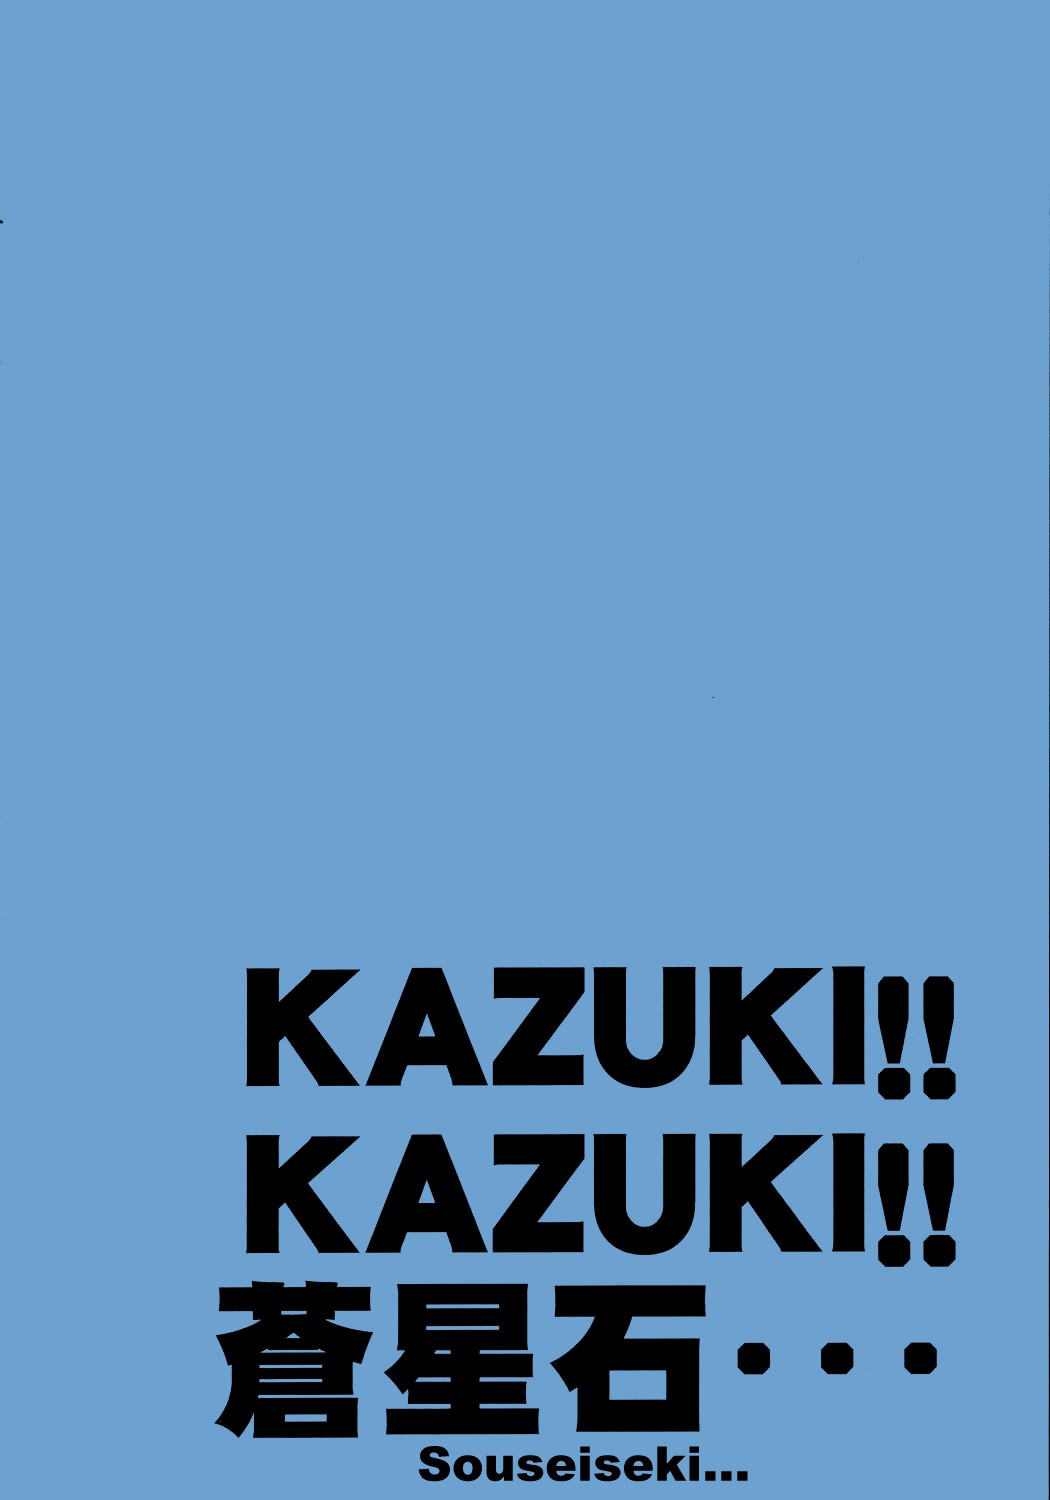 Rozen Maiden - Kazuki! Kazuki! Kazuki! -TRANSLATED- 